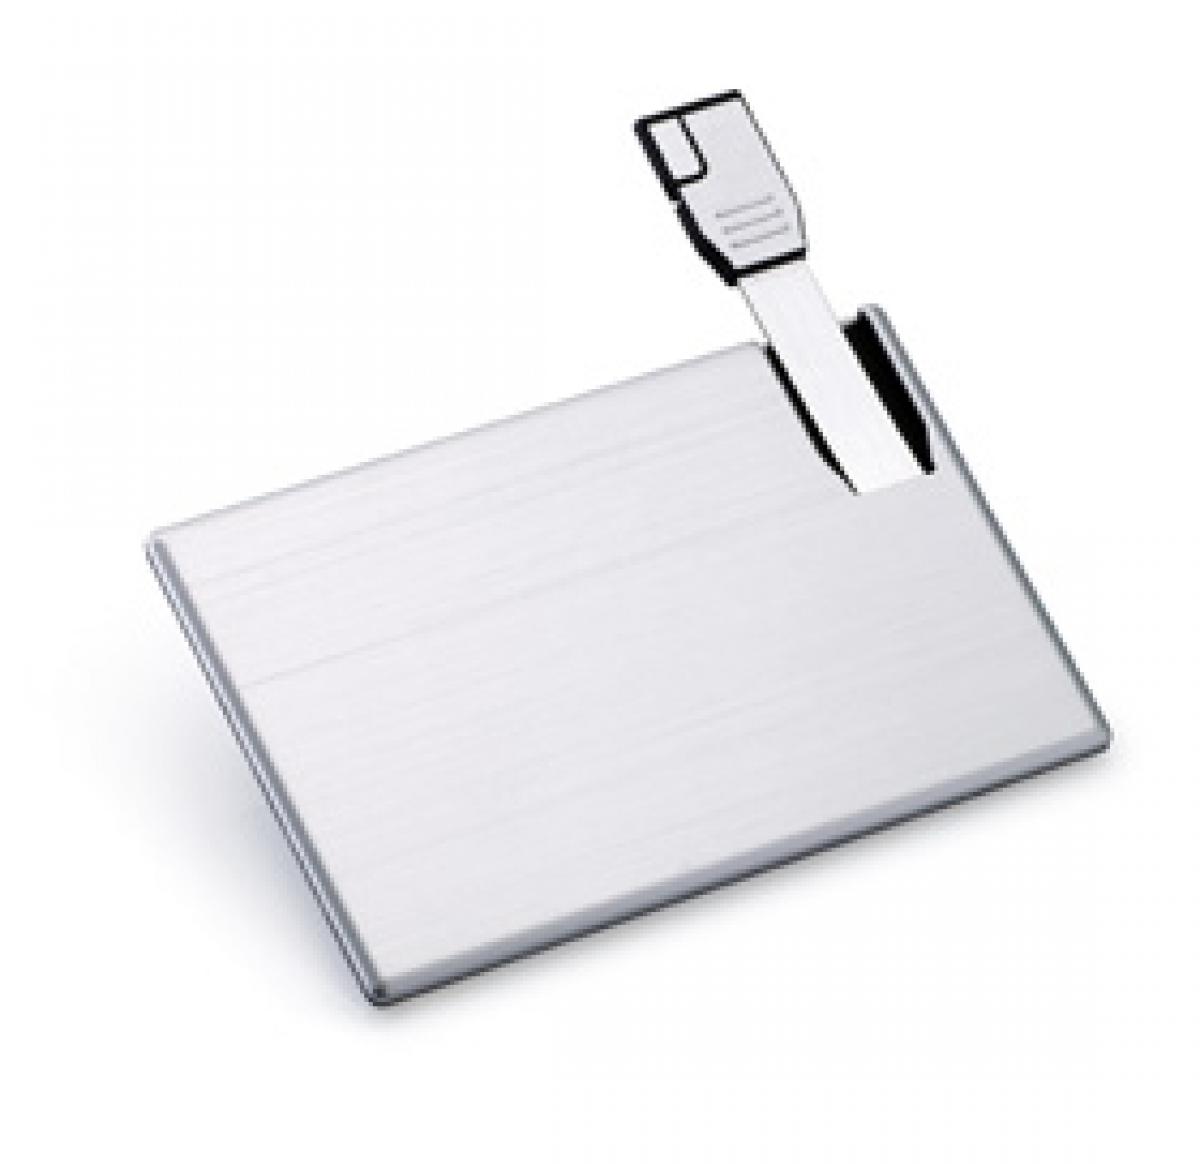 Metal Credit Card USB Flashdrive